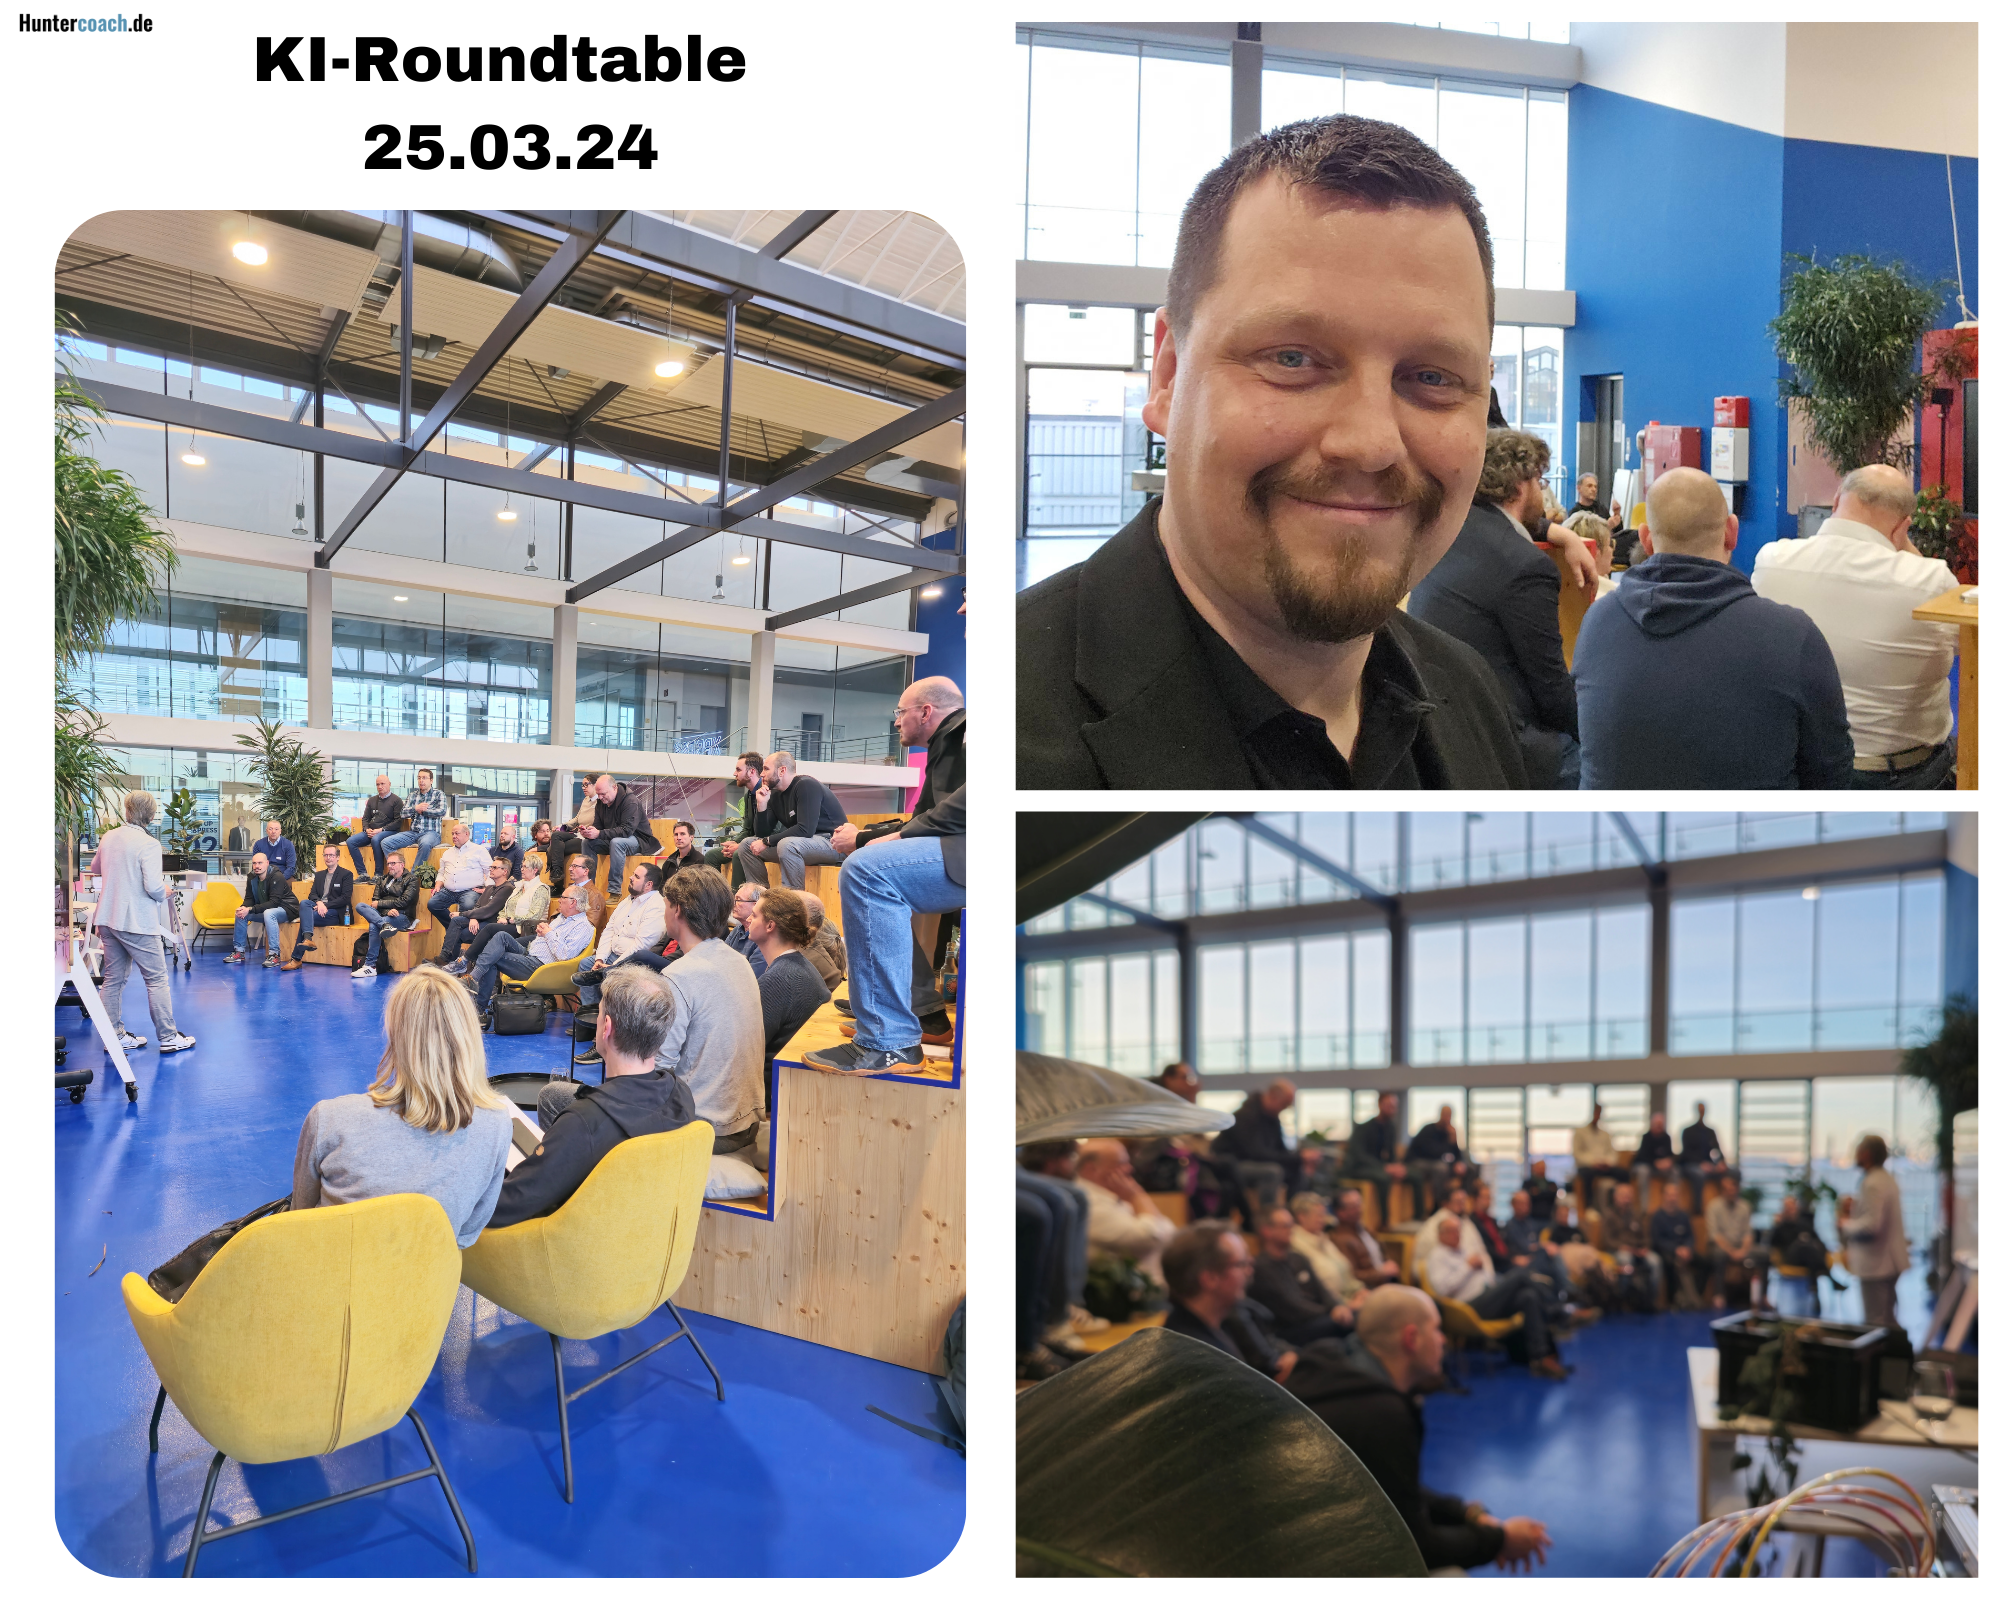 Collage von Fotos des KI-Roundtable-Events vom 25. März 2024, zeigt eine engagierte Menschenmenge während einer Präsentation und den Veranstalter Martin Jäger lächelnd im Vordergrund.